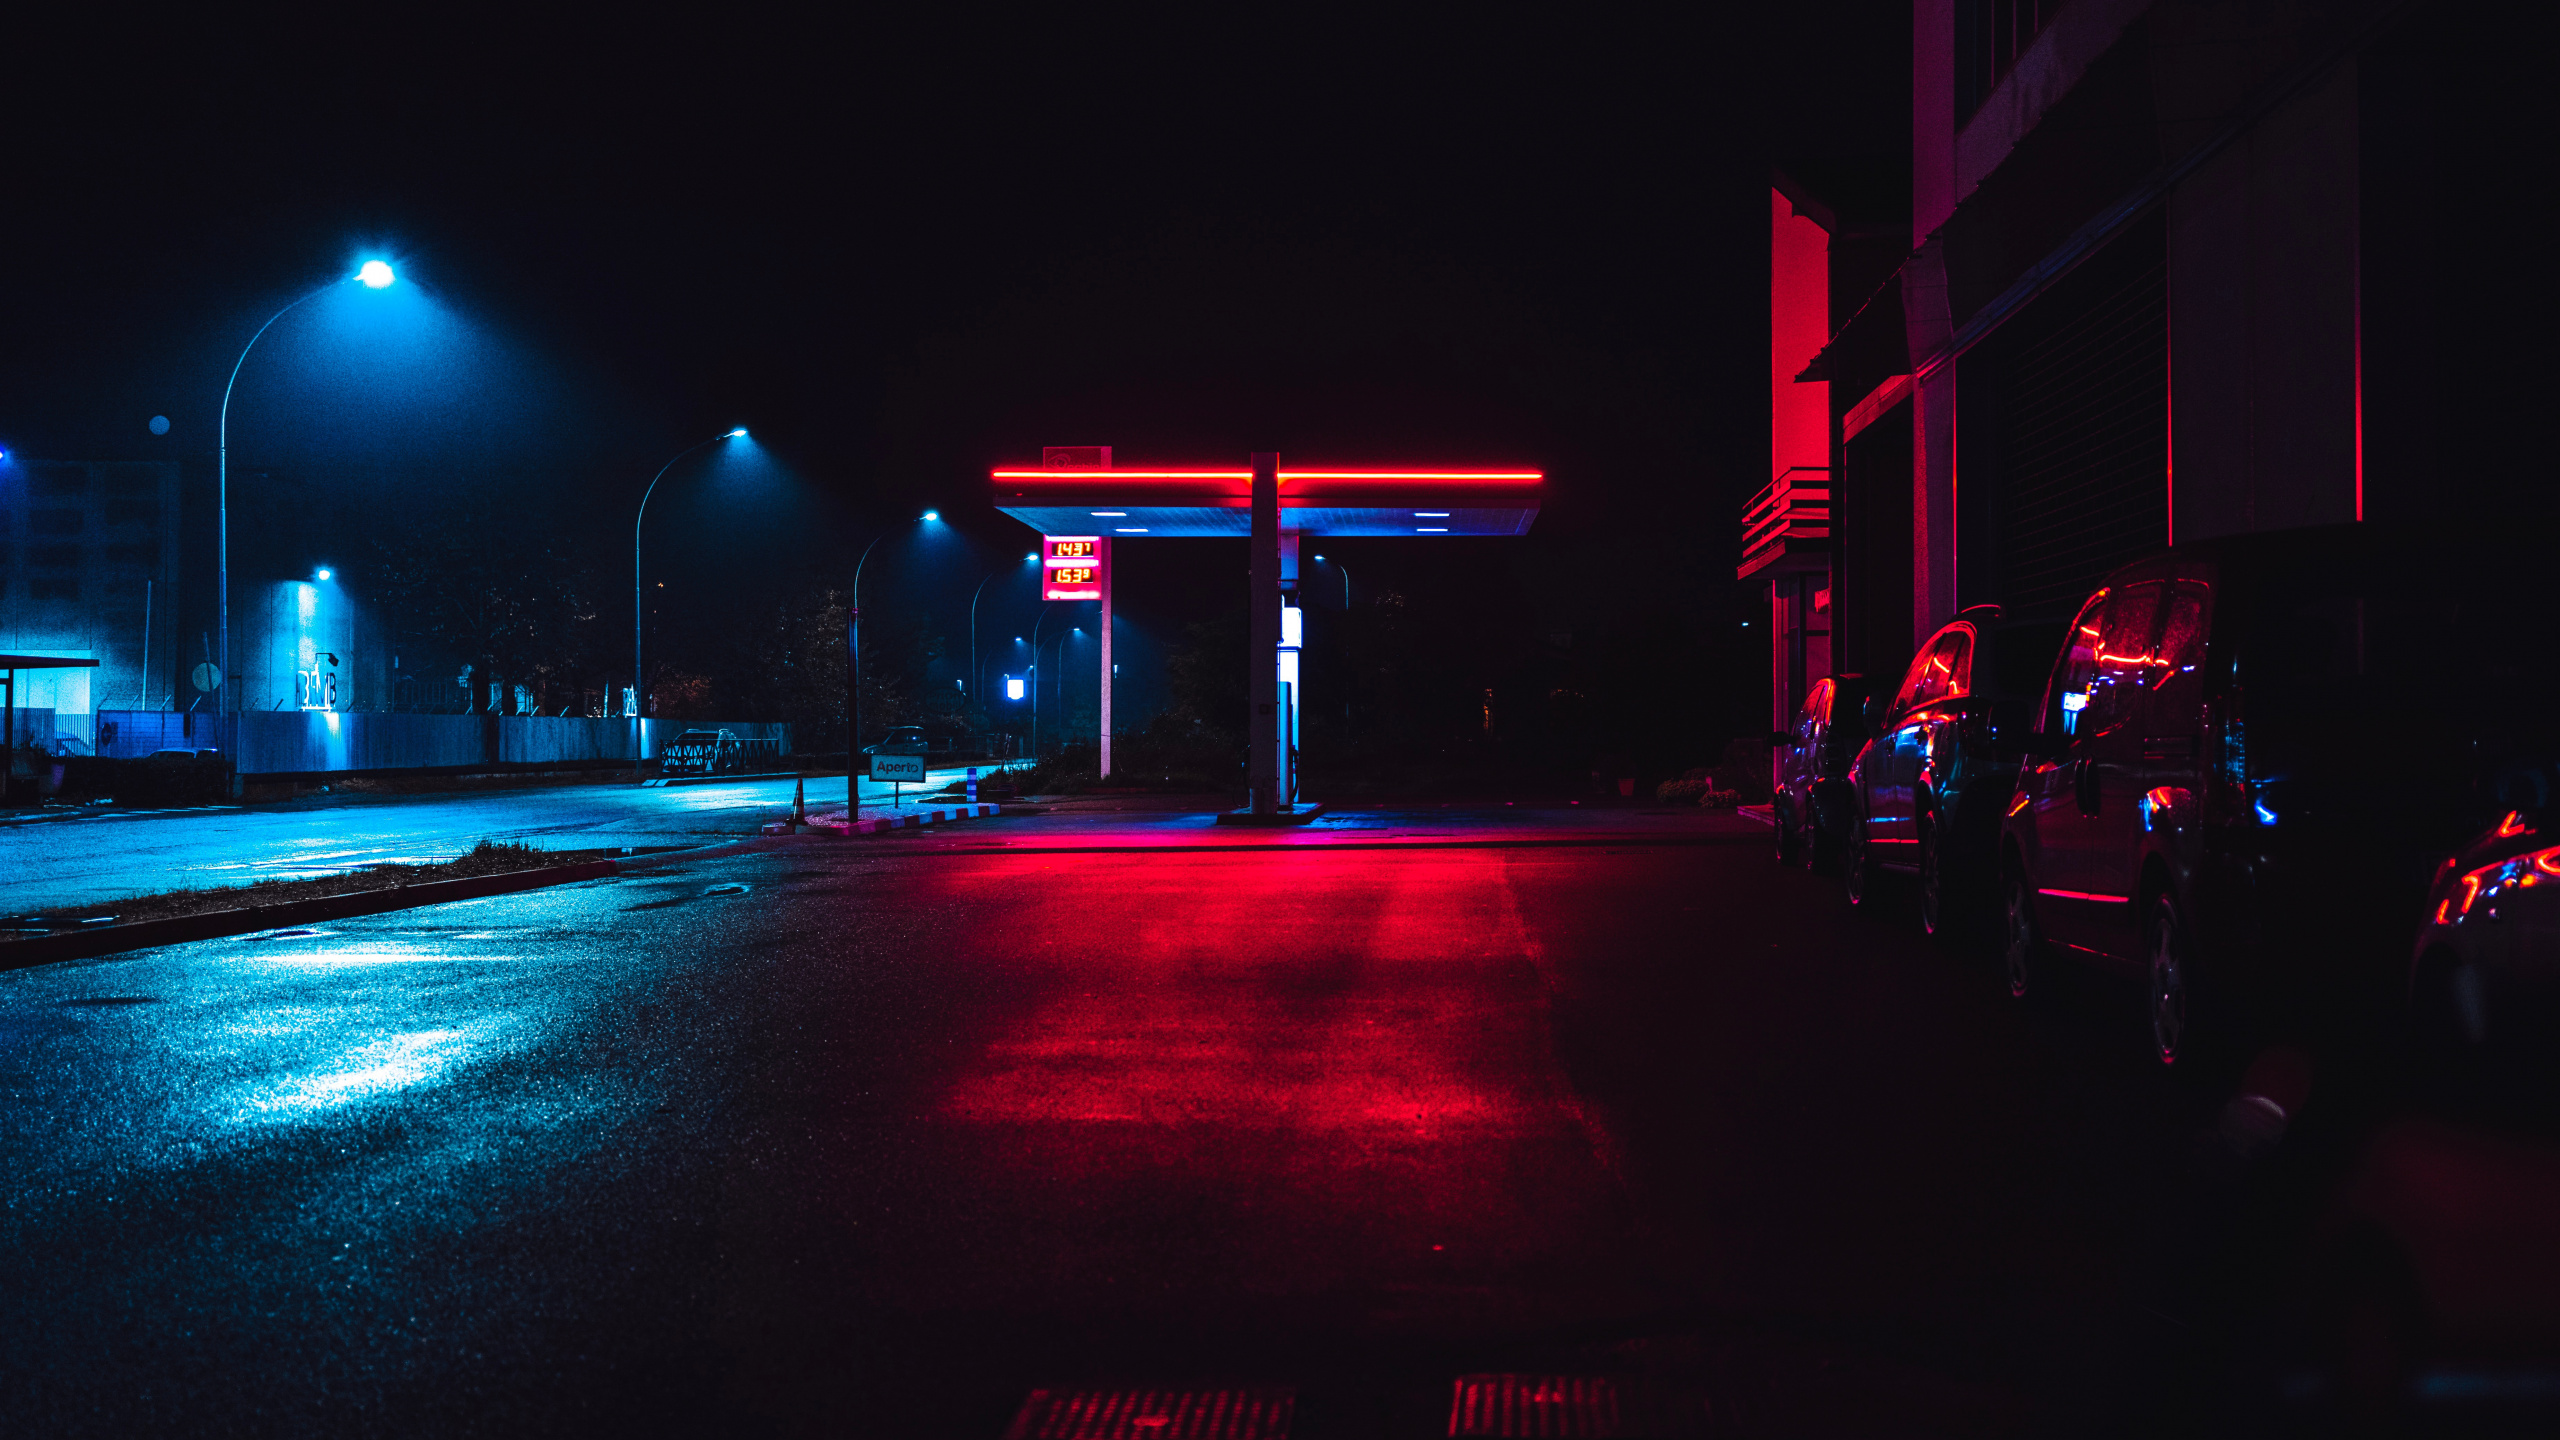 Automóviles Estacionados al Costado de la Carretera Durante la Noche. Wallpaper in 2560x1440 Resolution